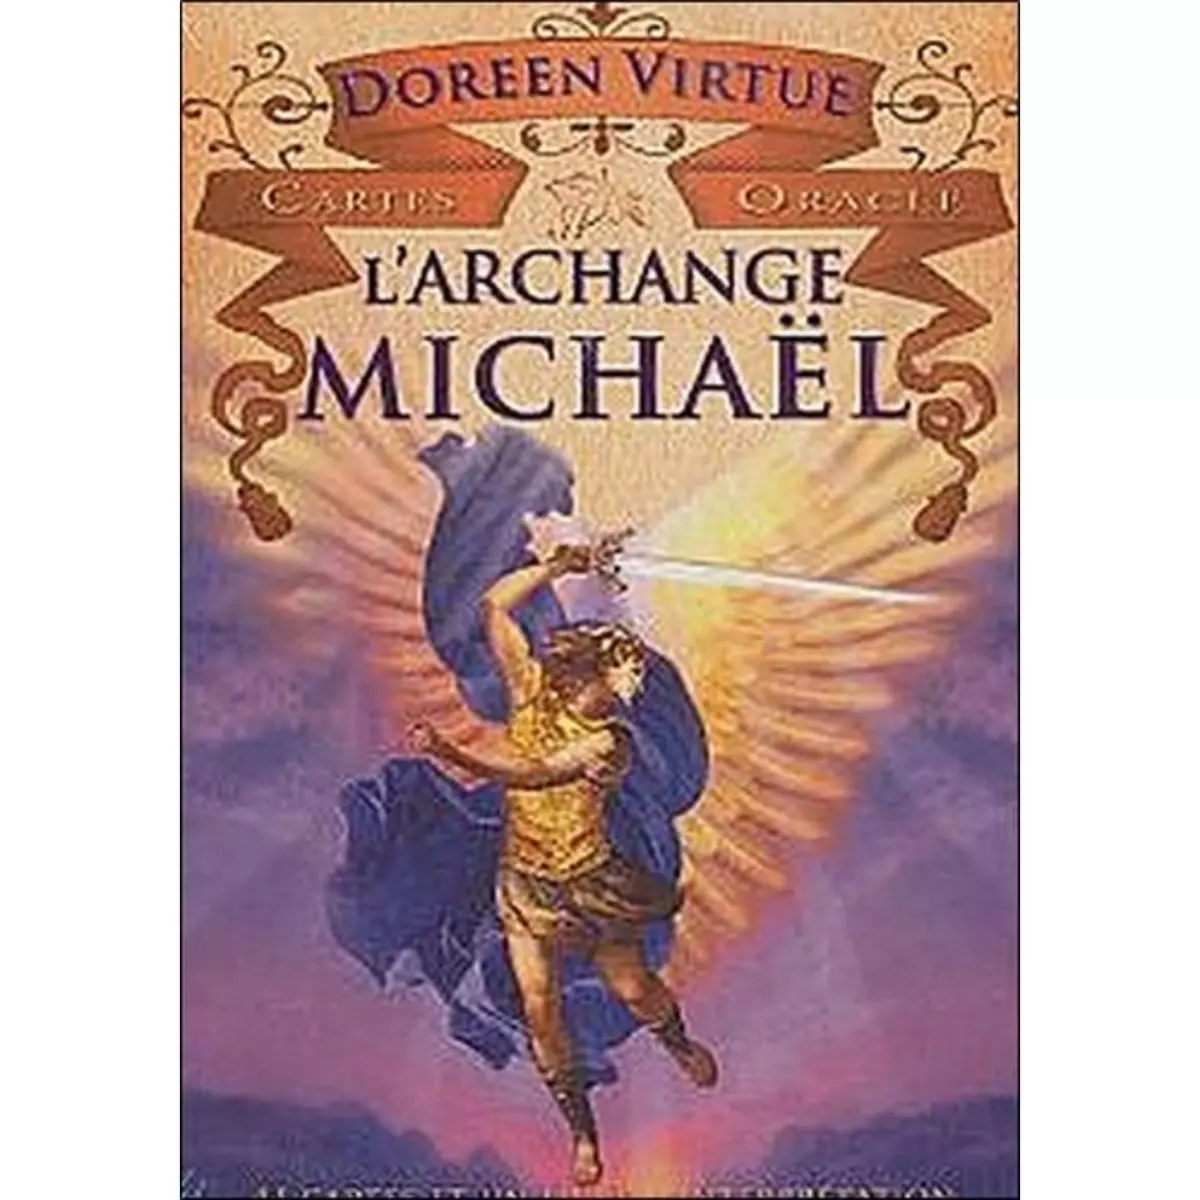  CARTES ORACLE L'ARCHANGE MICHAEL. 44 CARTES ET UN LIVRET D'INTERPRETATION, Virtue Doreen